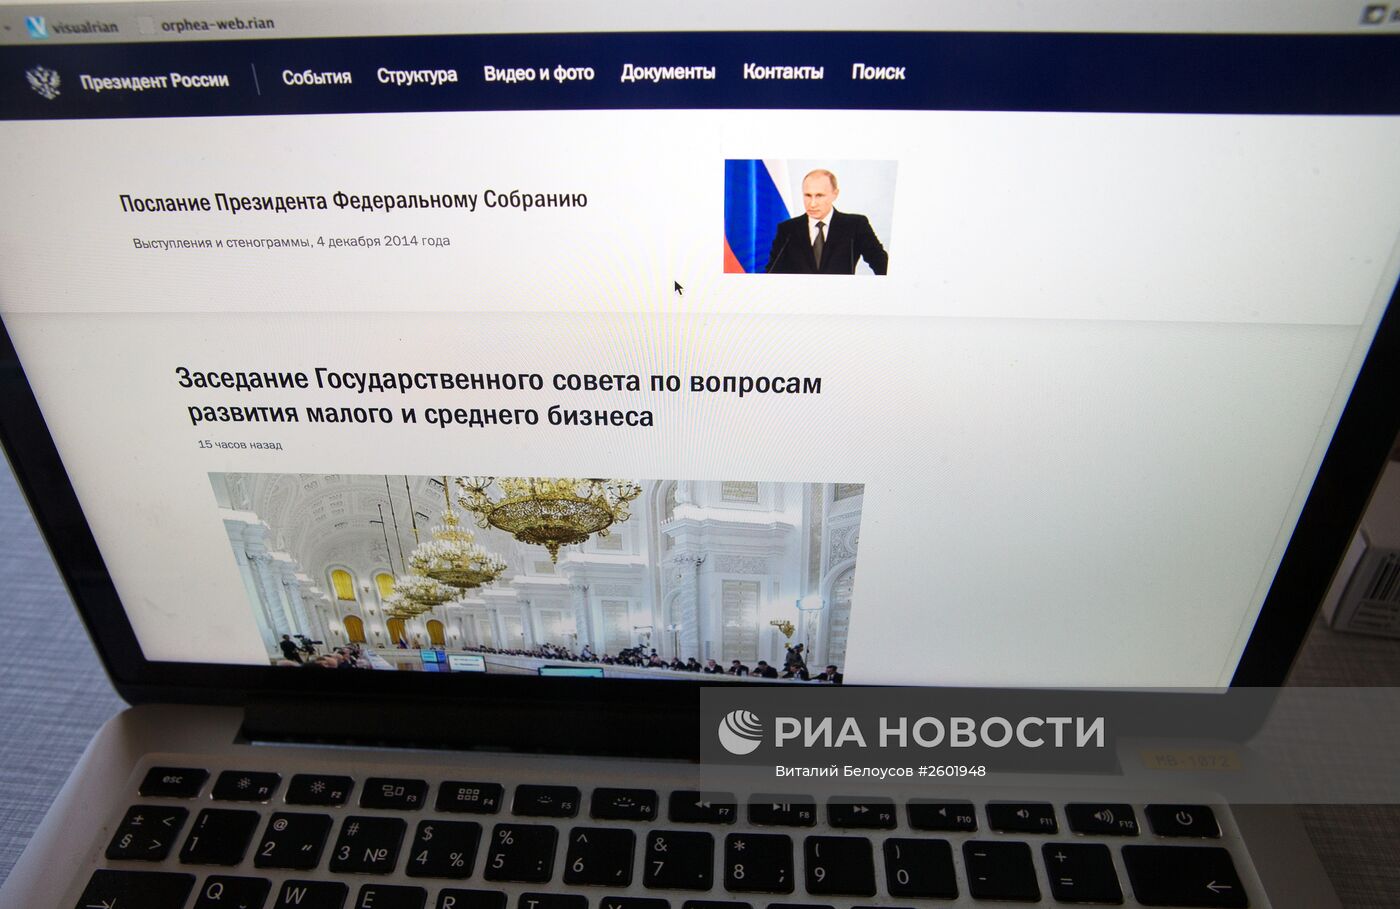 Запущена новая версия сайта президента России